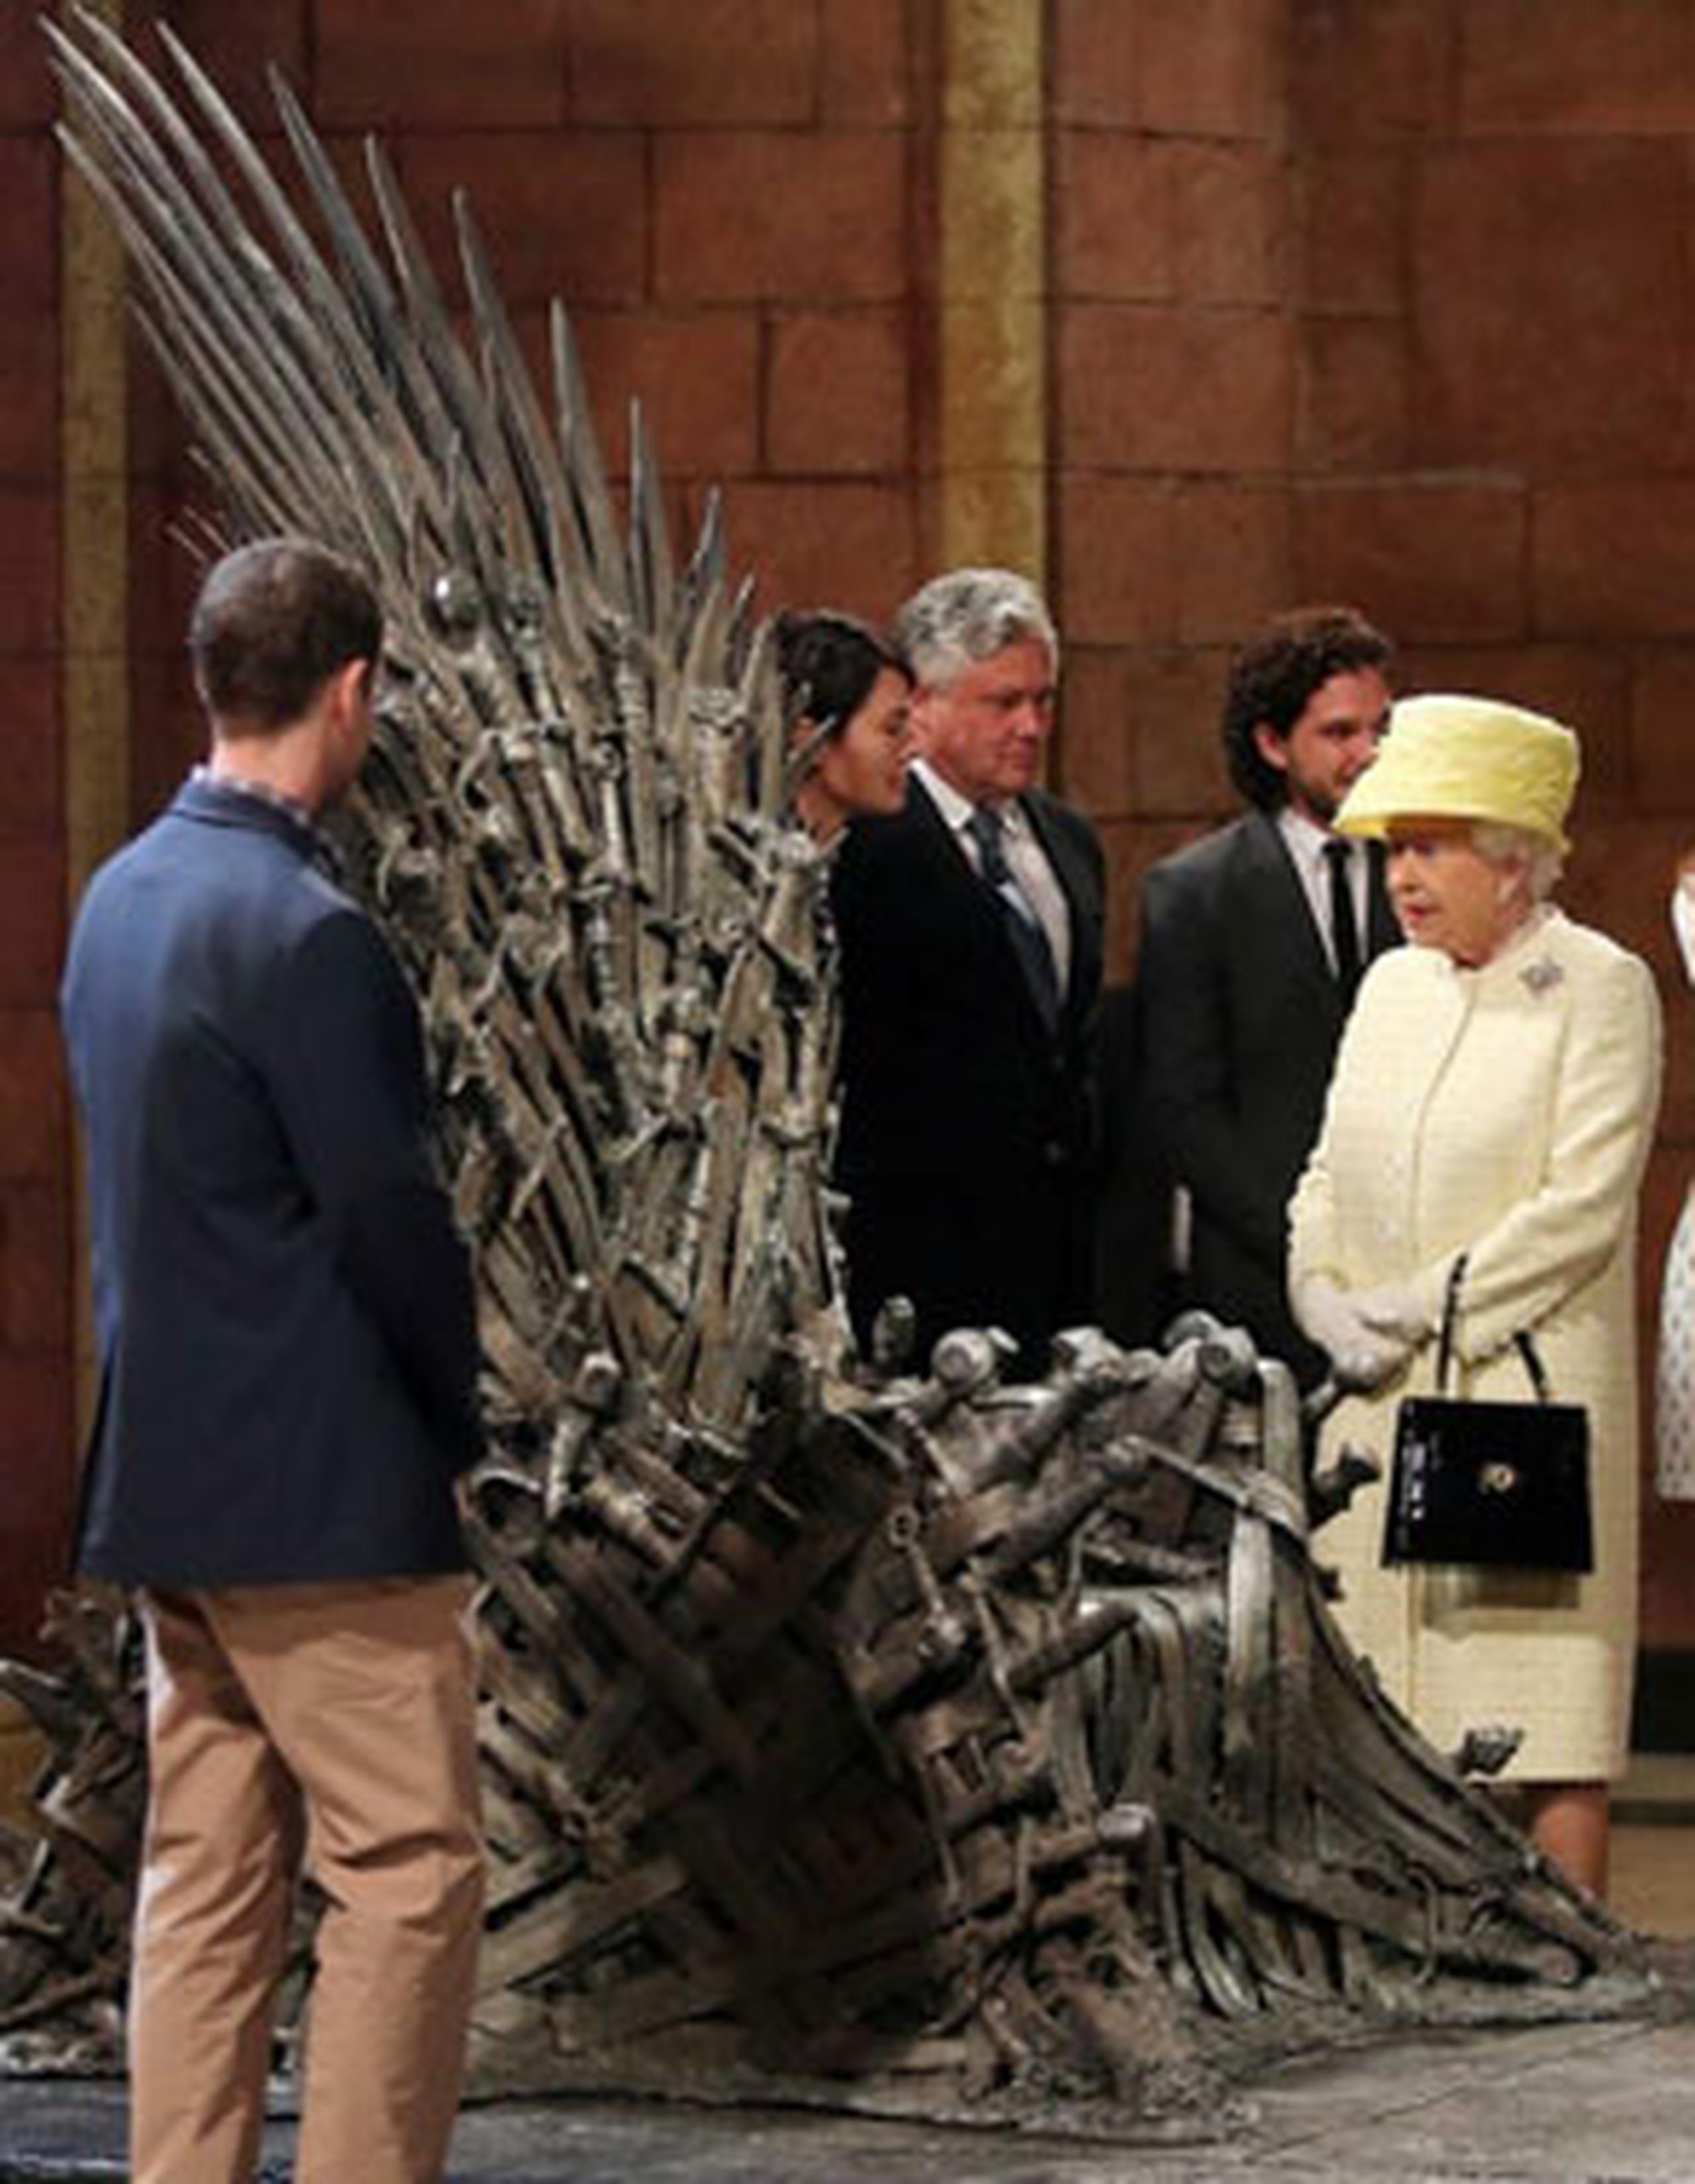 La reina Isabel II observa el “Trono de Hierro” durante su visita a el estudio de filmación de la serie “Game of Thrones”. (AFP)